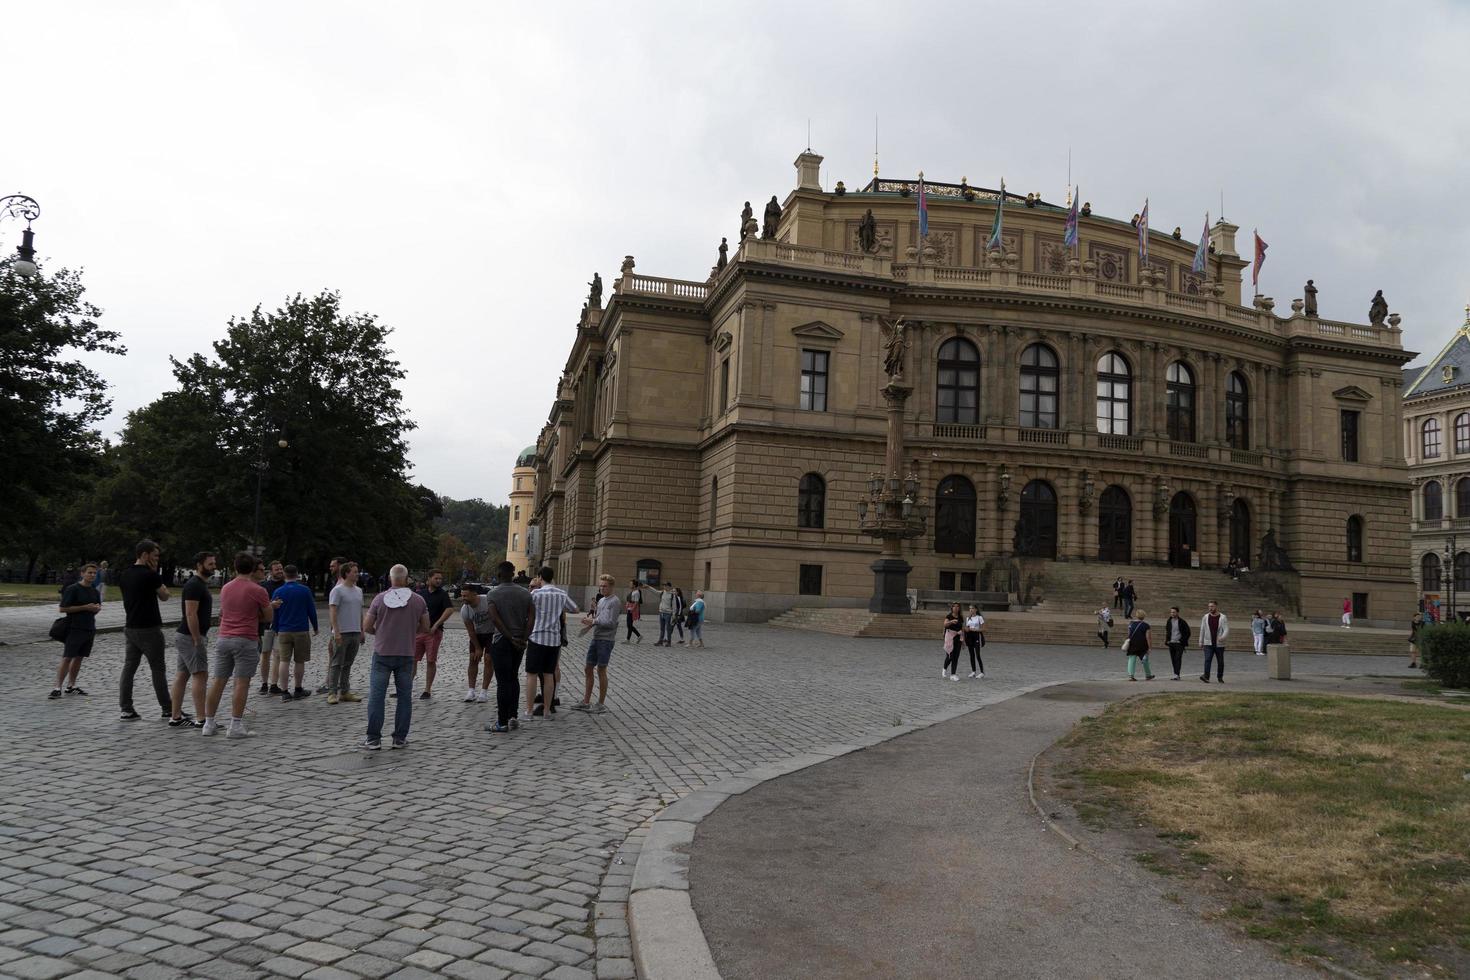 prag, tschechische republik - 15. juli 2019 - die stadt ist im sommer voller touristen foto